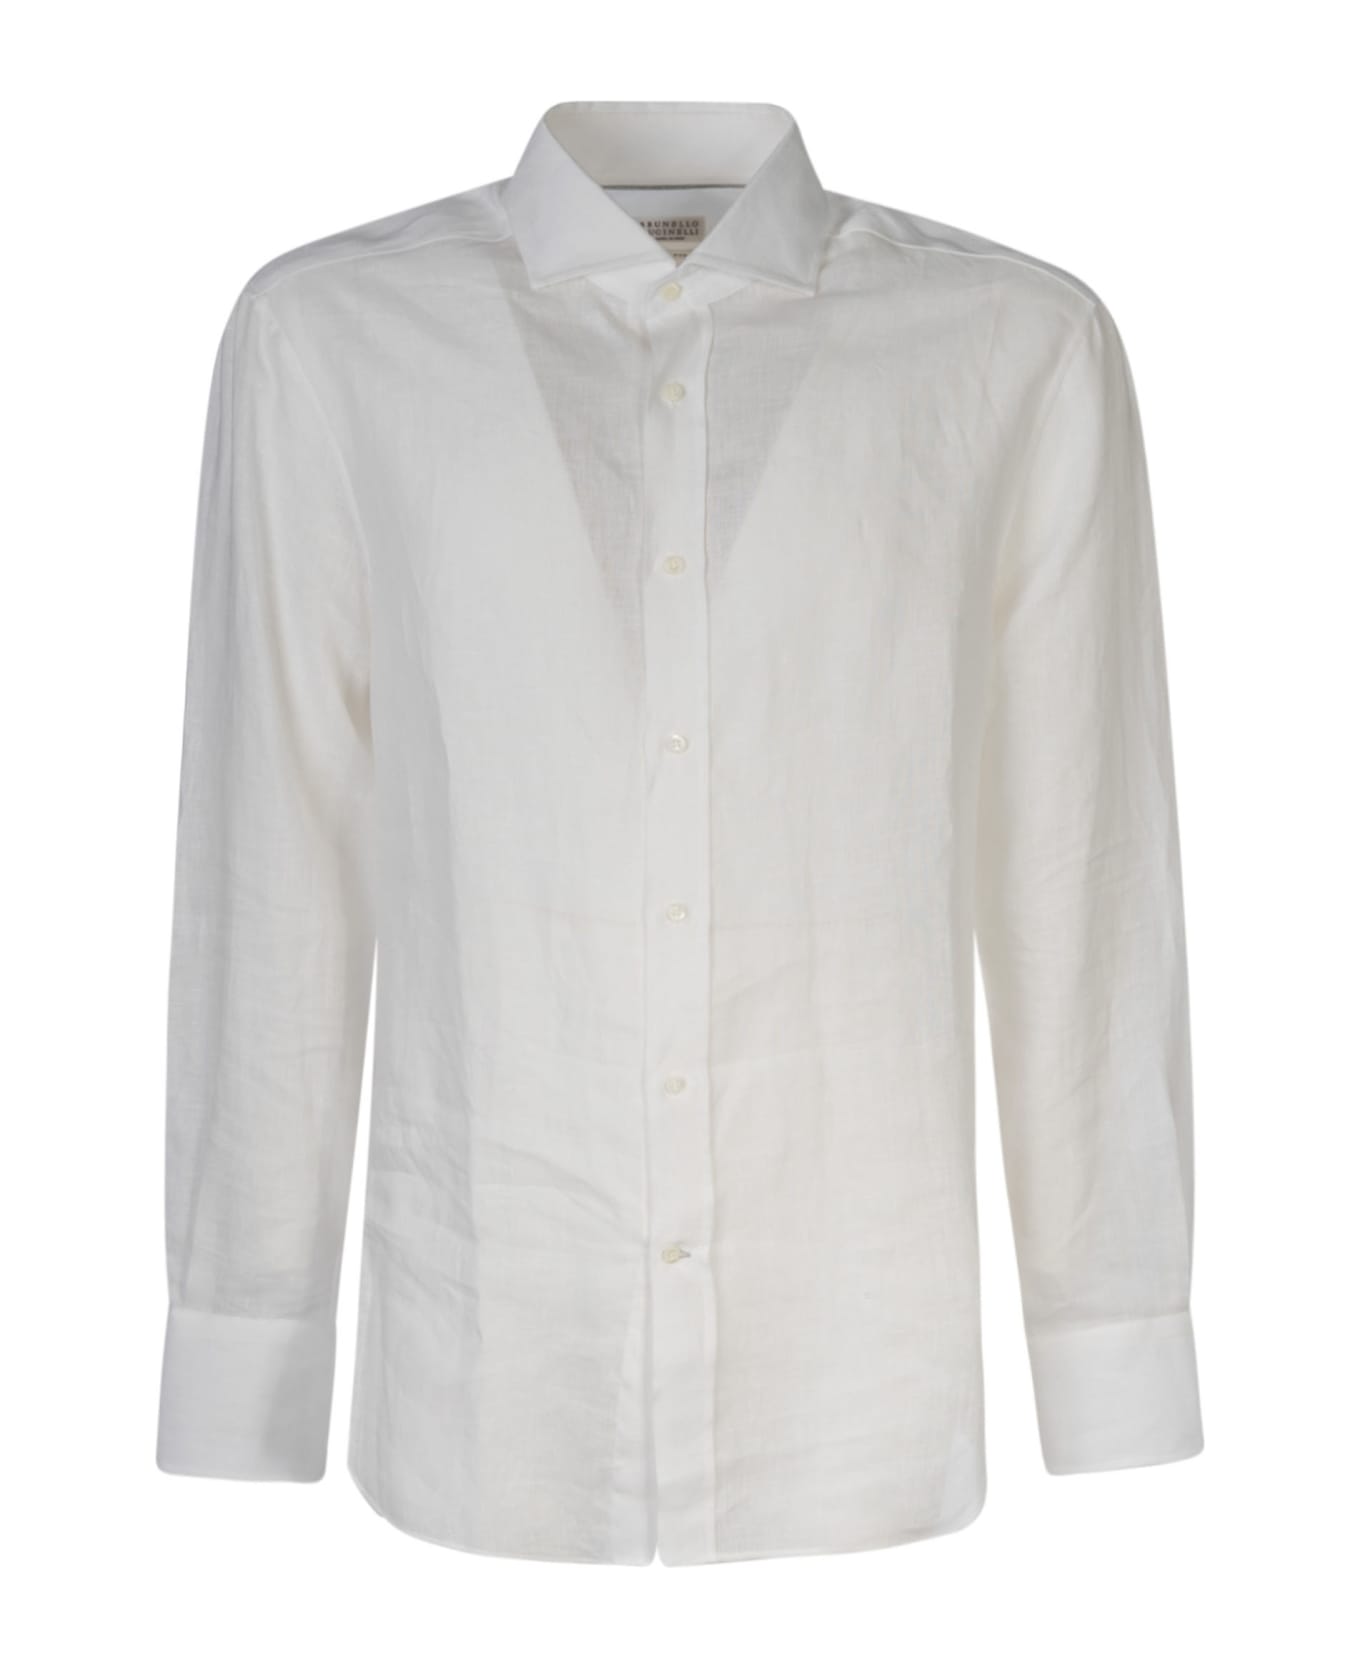 Brunello Cucinelli Long-sleeved Shirt - White シャツ